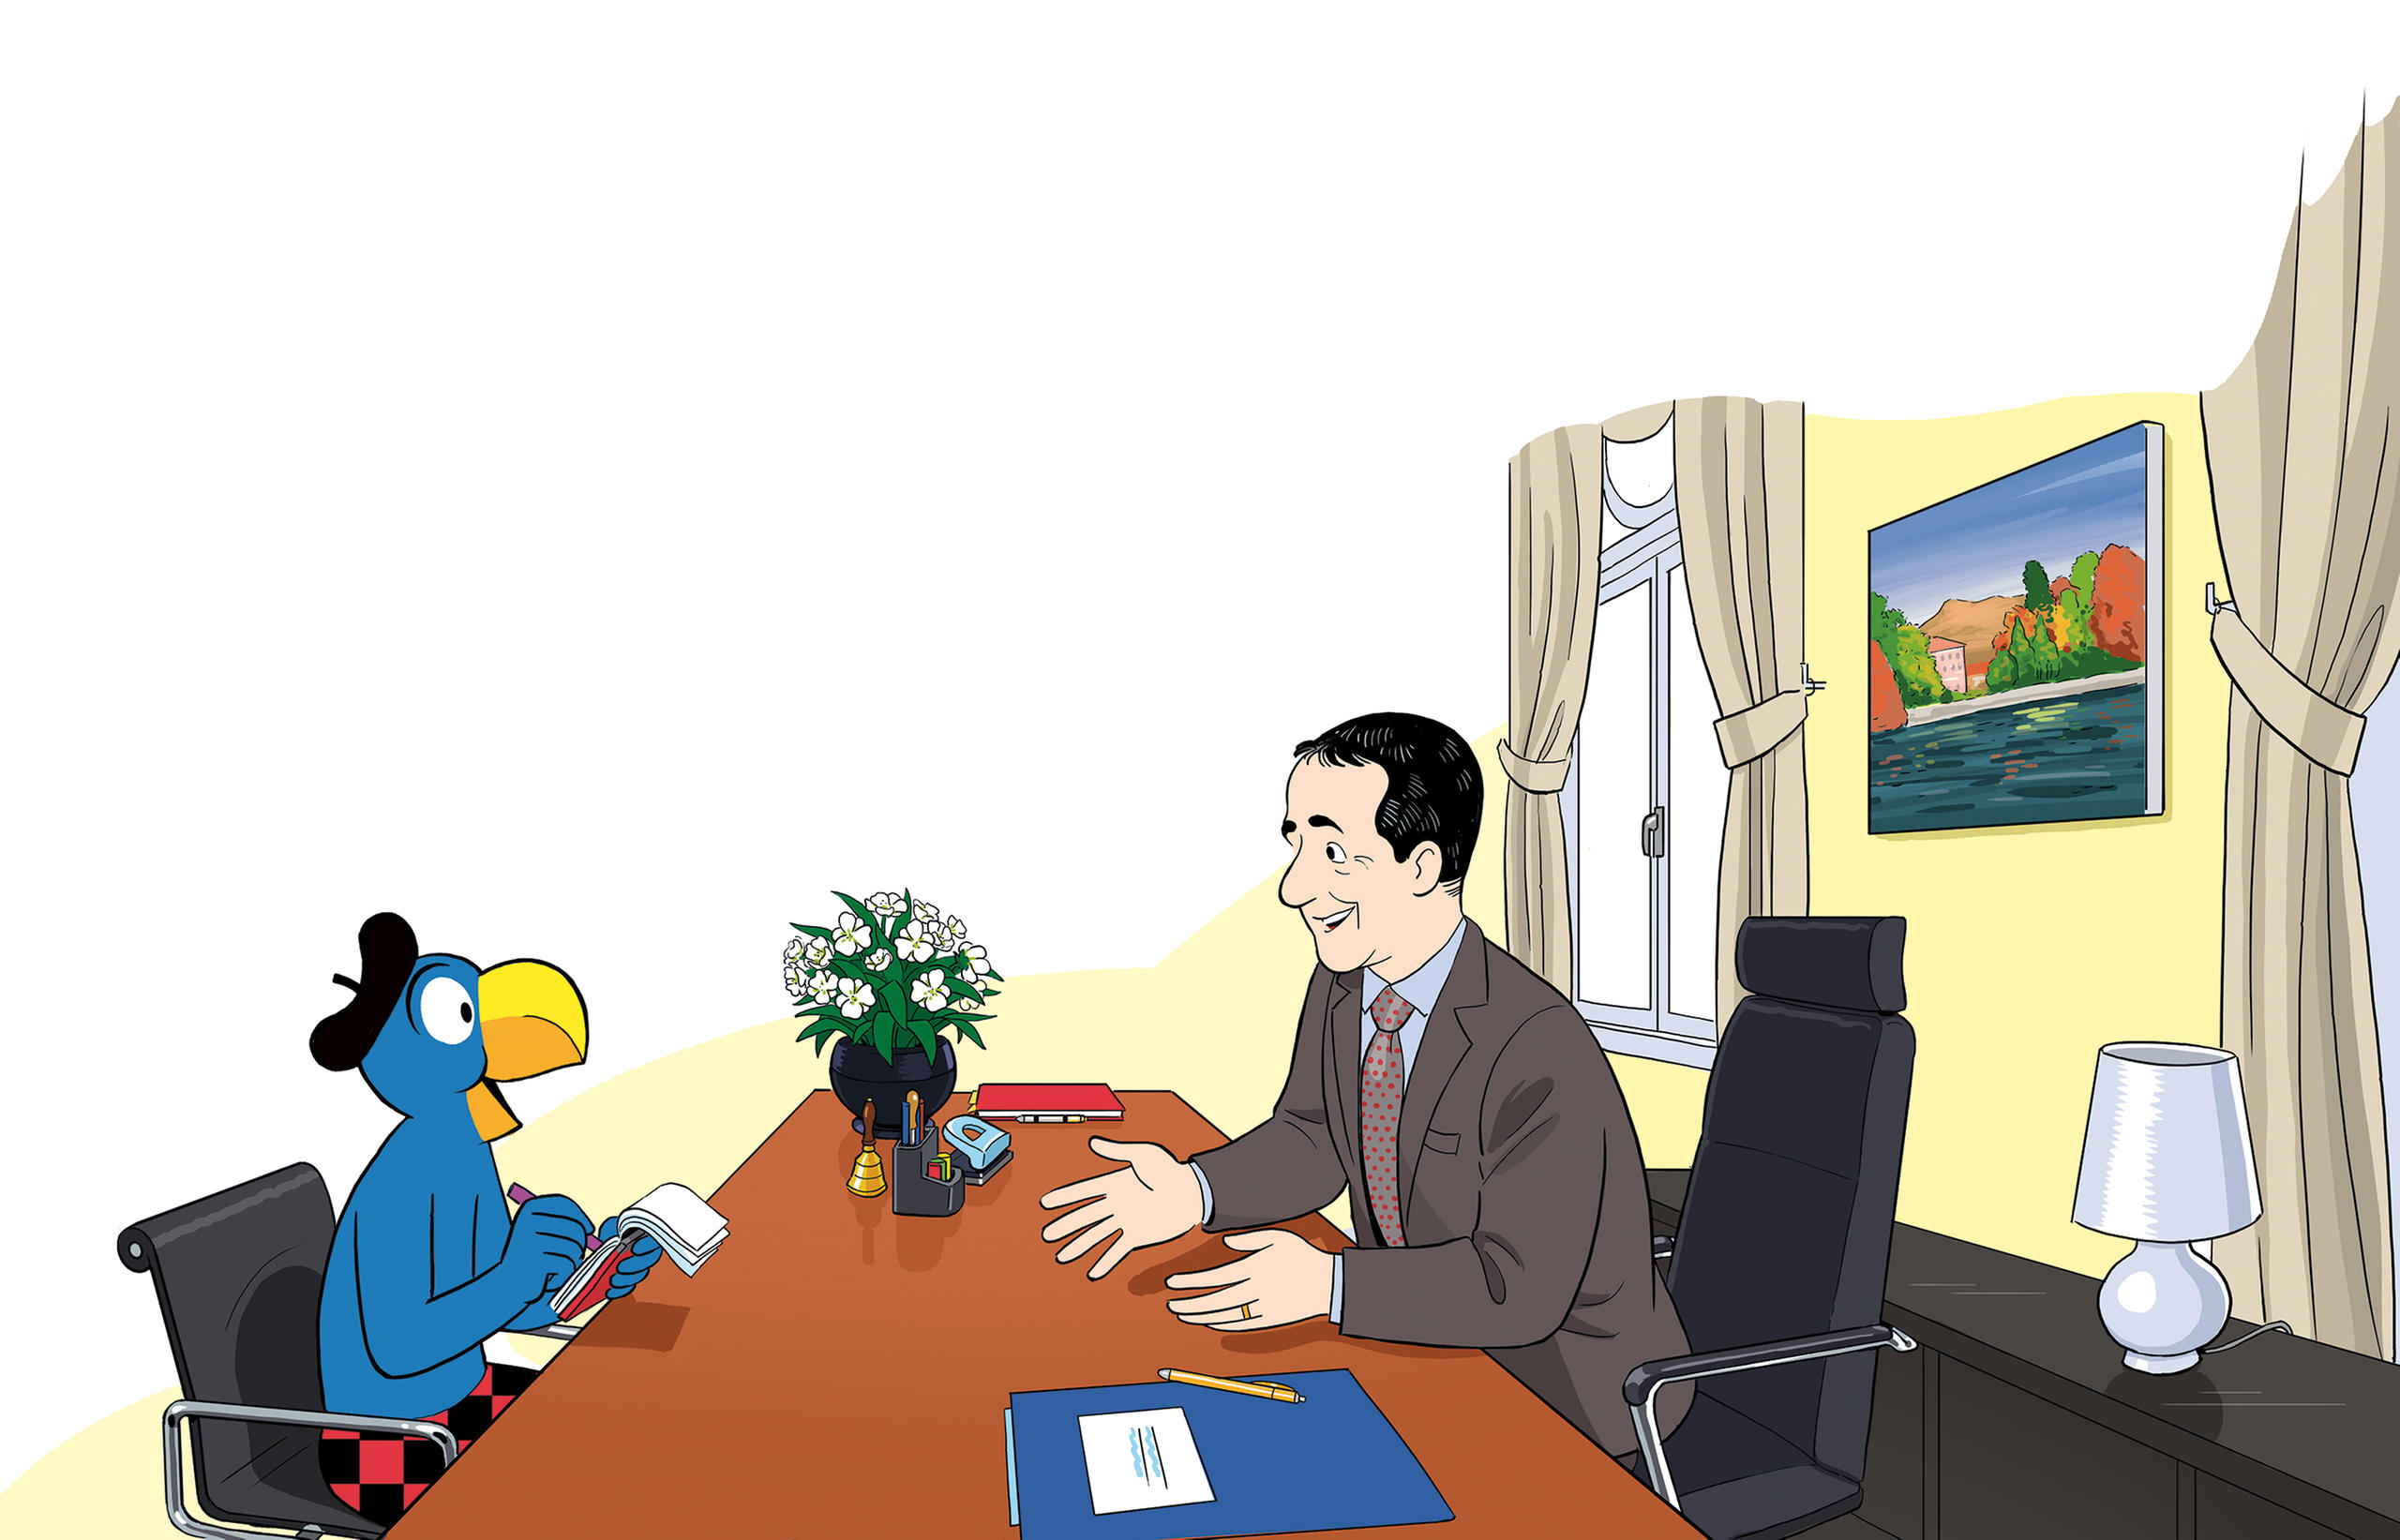 رسم كاريكاتوري لوزير الخارجية السويسري إينياتسيو كاسّيس وهو يجلس قبالة شخصية كارتونية.